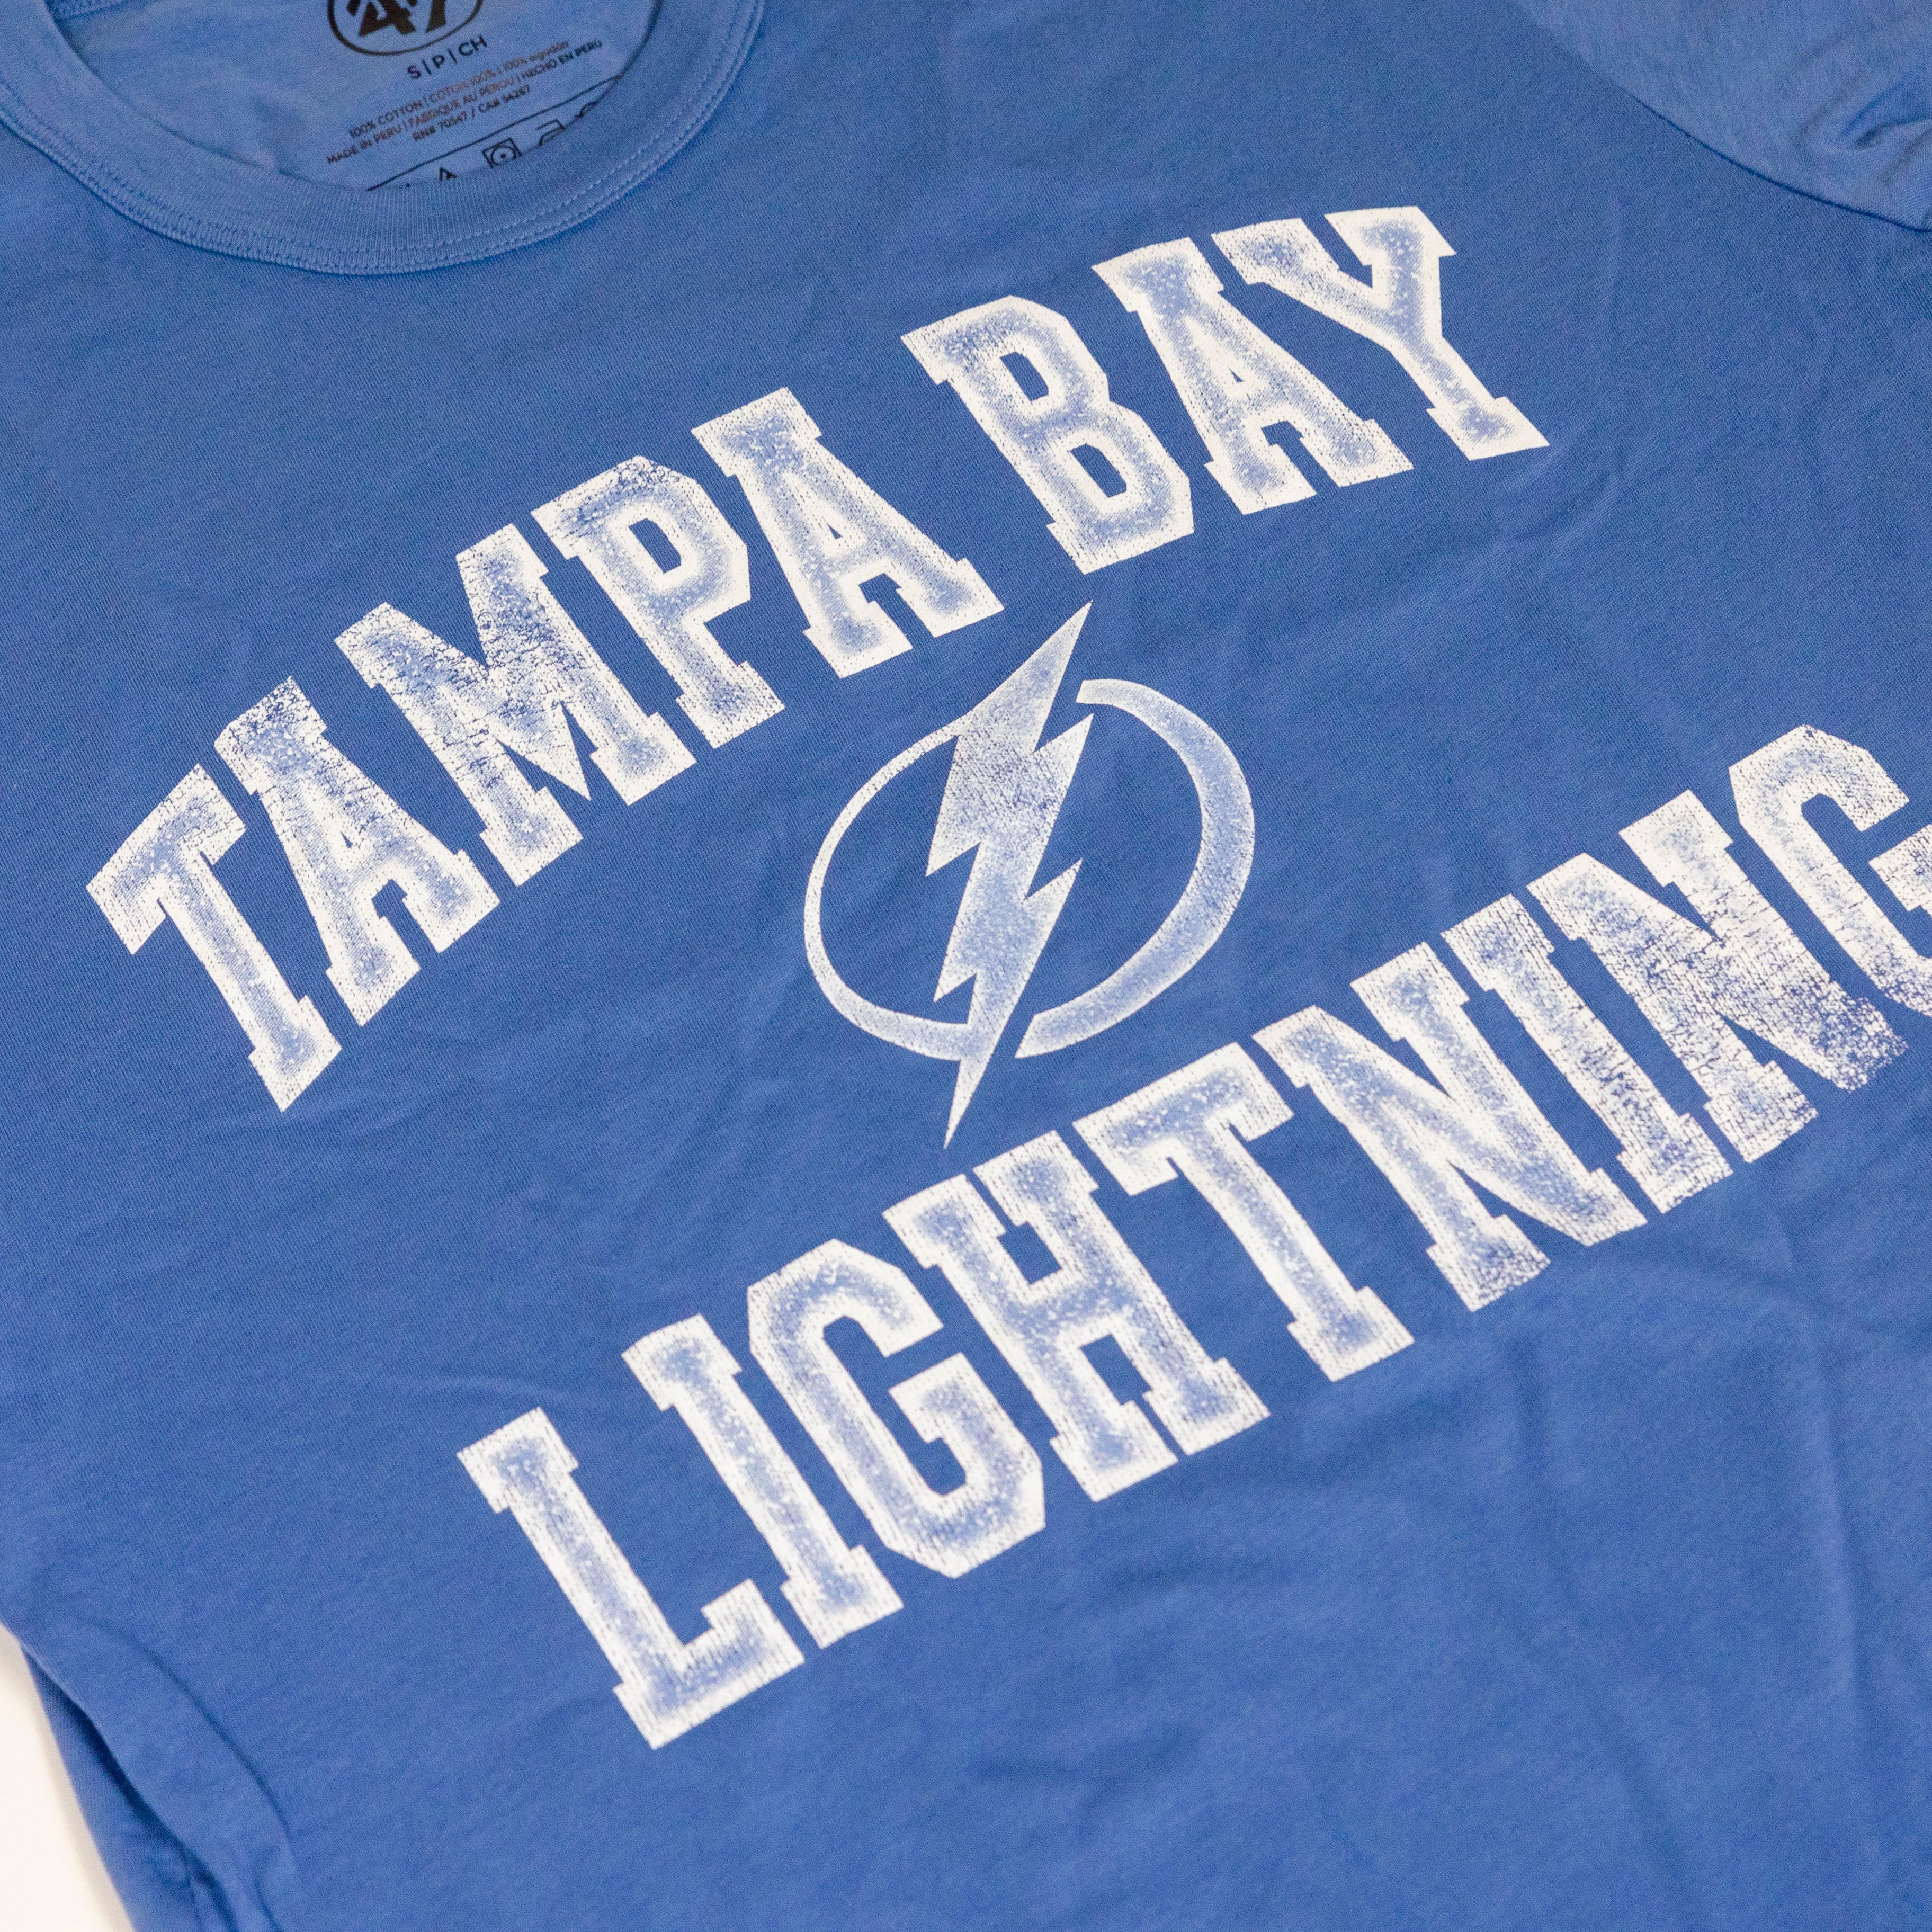 Tampa Bay Lightning Gear, Lightning Jerseys, Tampa Bay Lightning Hats,  Lightning Apparel